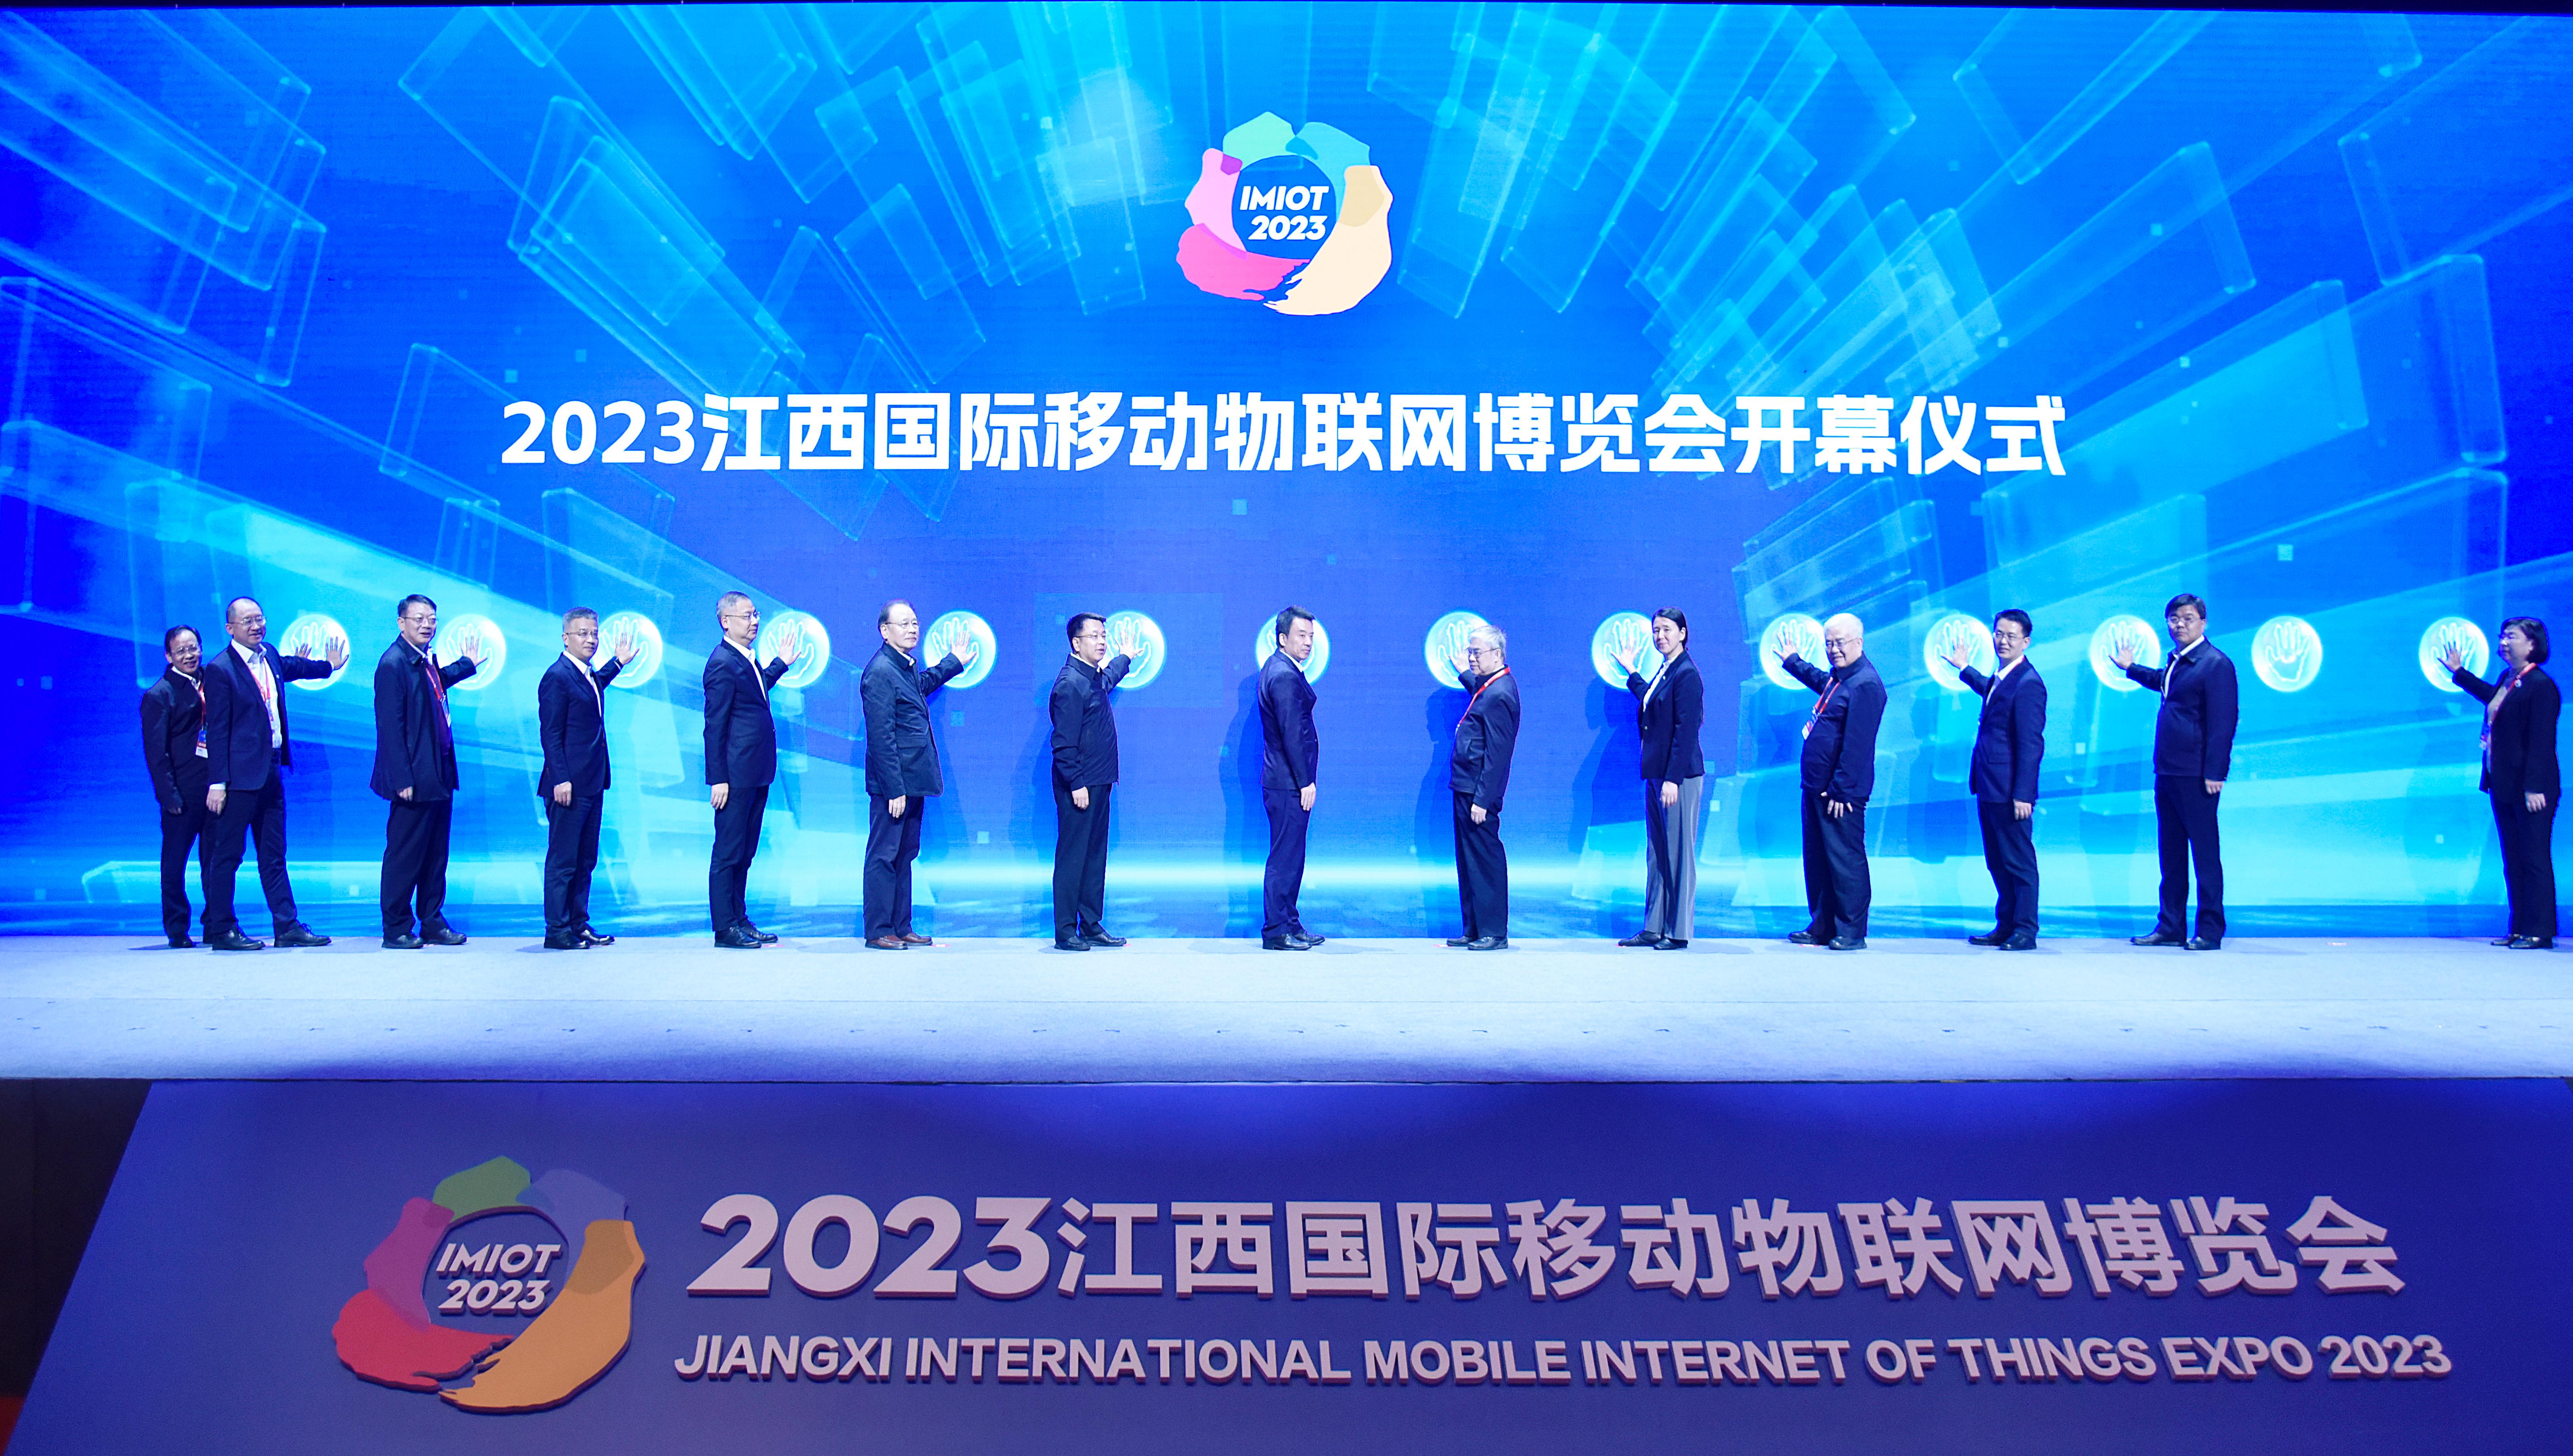 中国电信江西公司精彩亮相2023江西国际移动物联网博览会